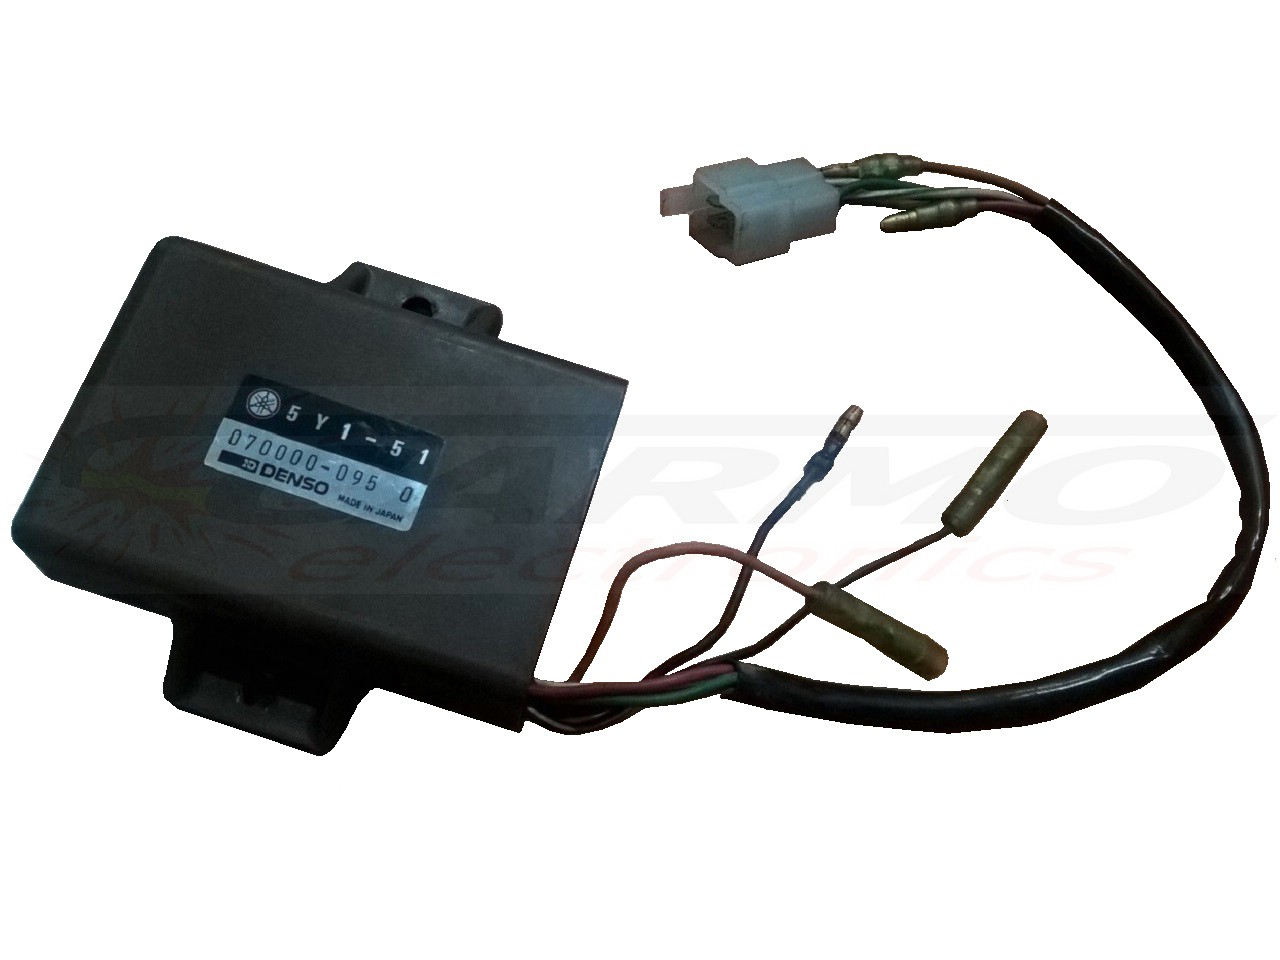 XT550 XT600 CDI dispositif de commande boîte noire (5Y1-50, 5Y1-51, 5Y1-52)